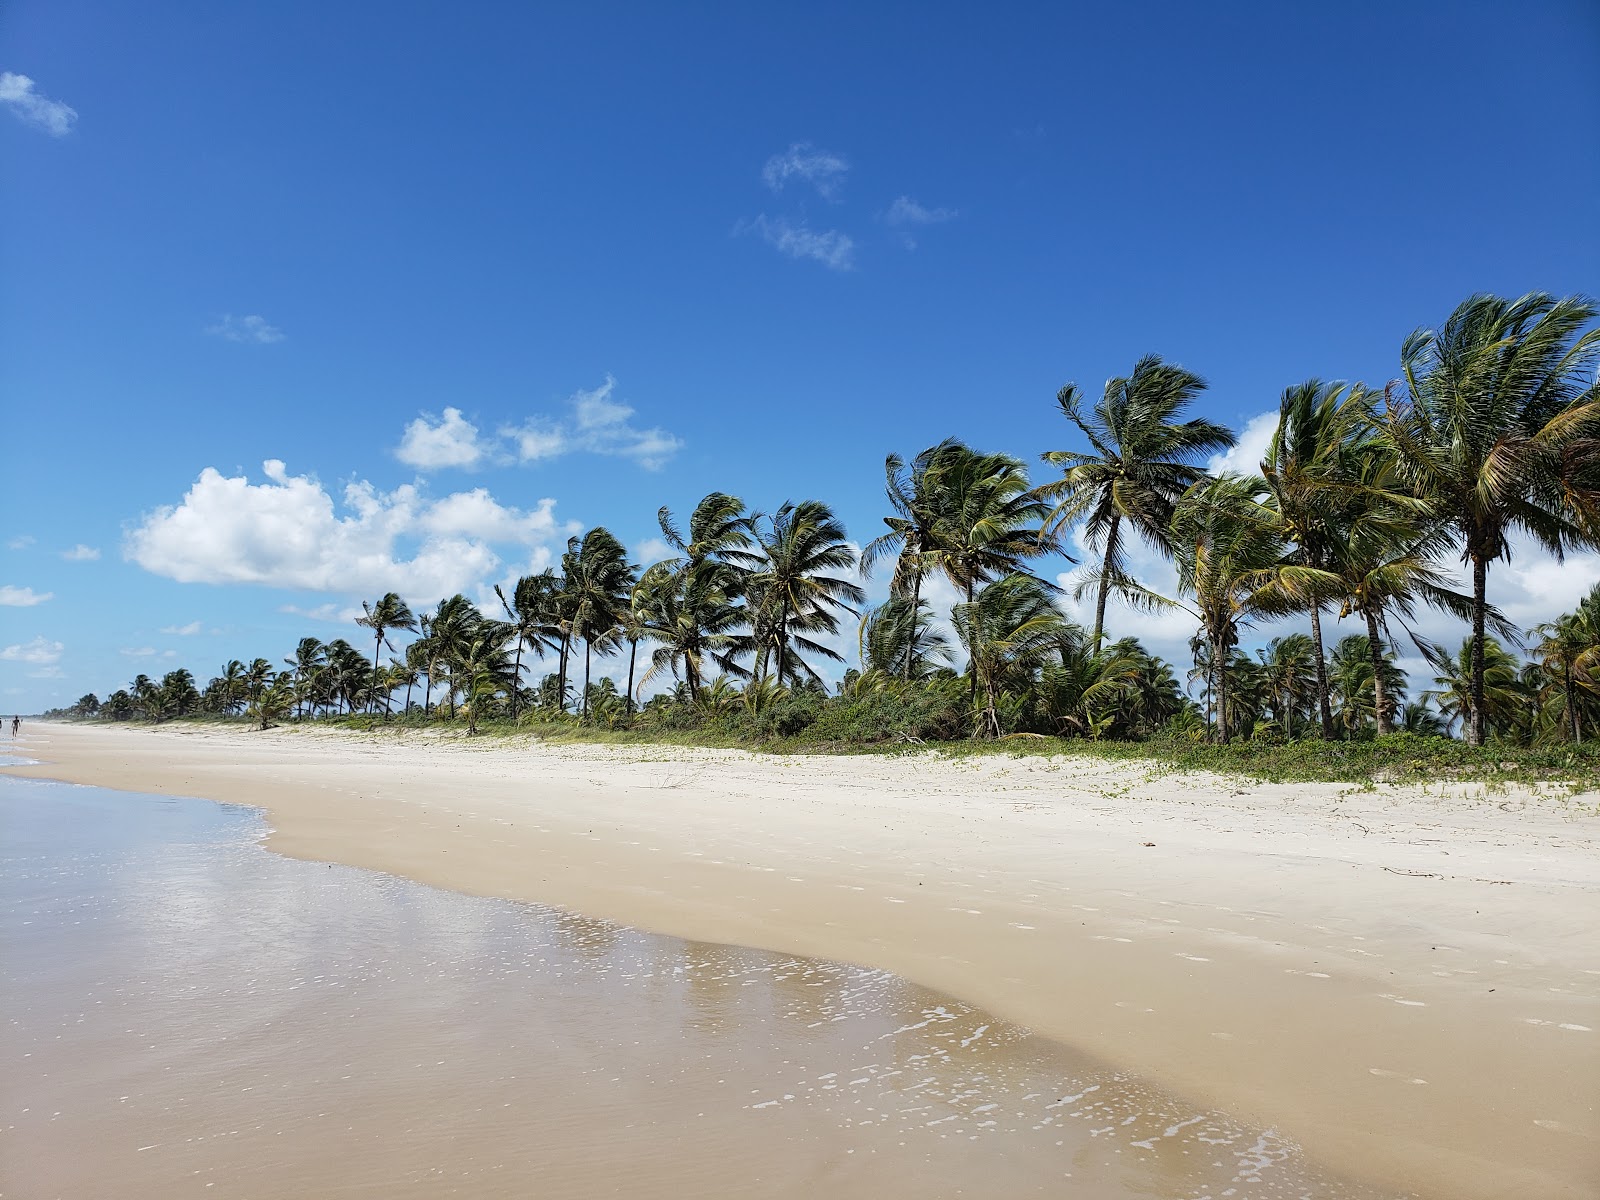 Zdjęcie Praia da ilha de Comandatuba - popularne miejsce wśród znawców relaksu